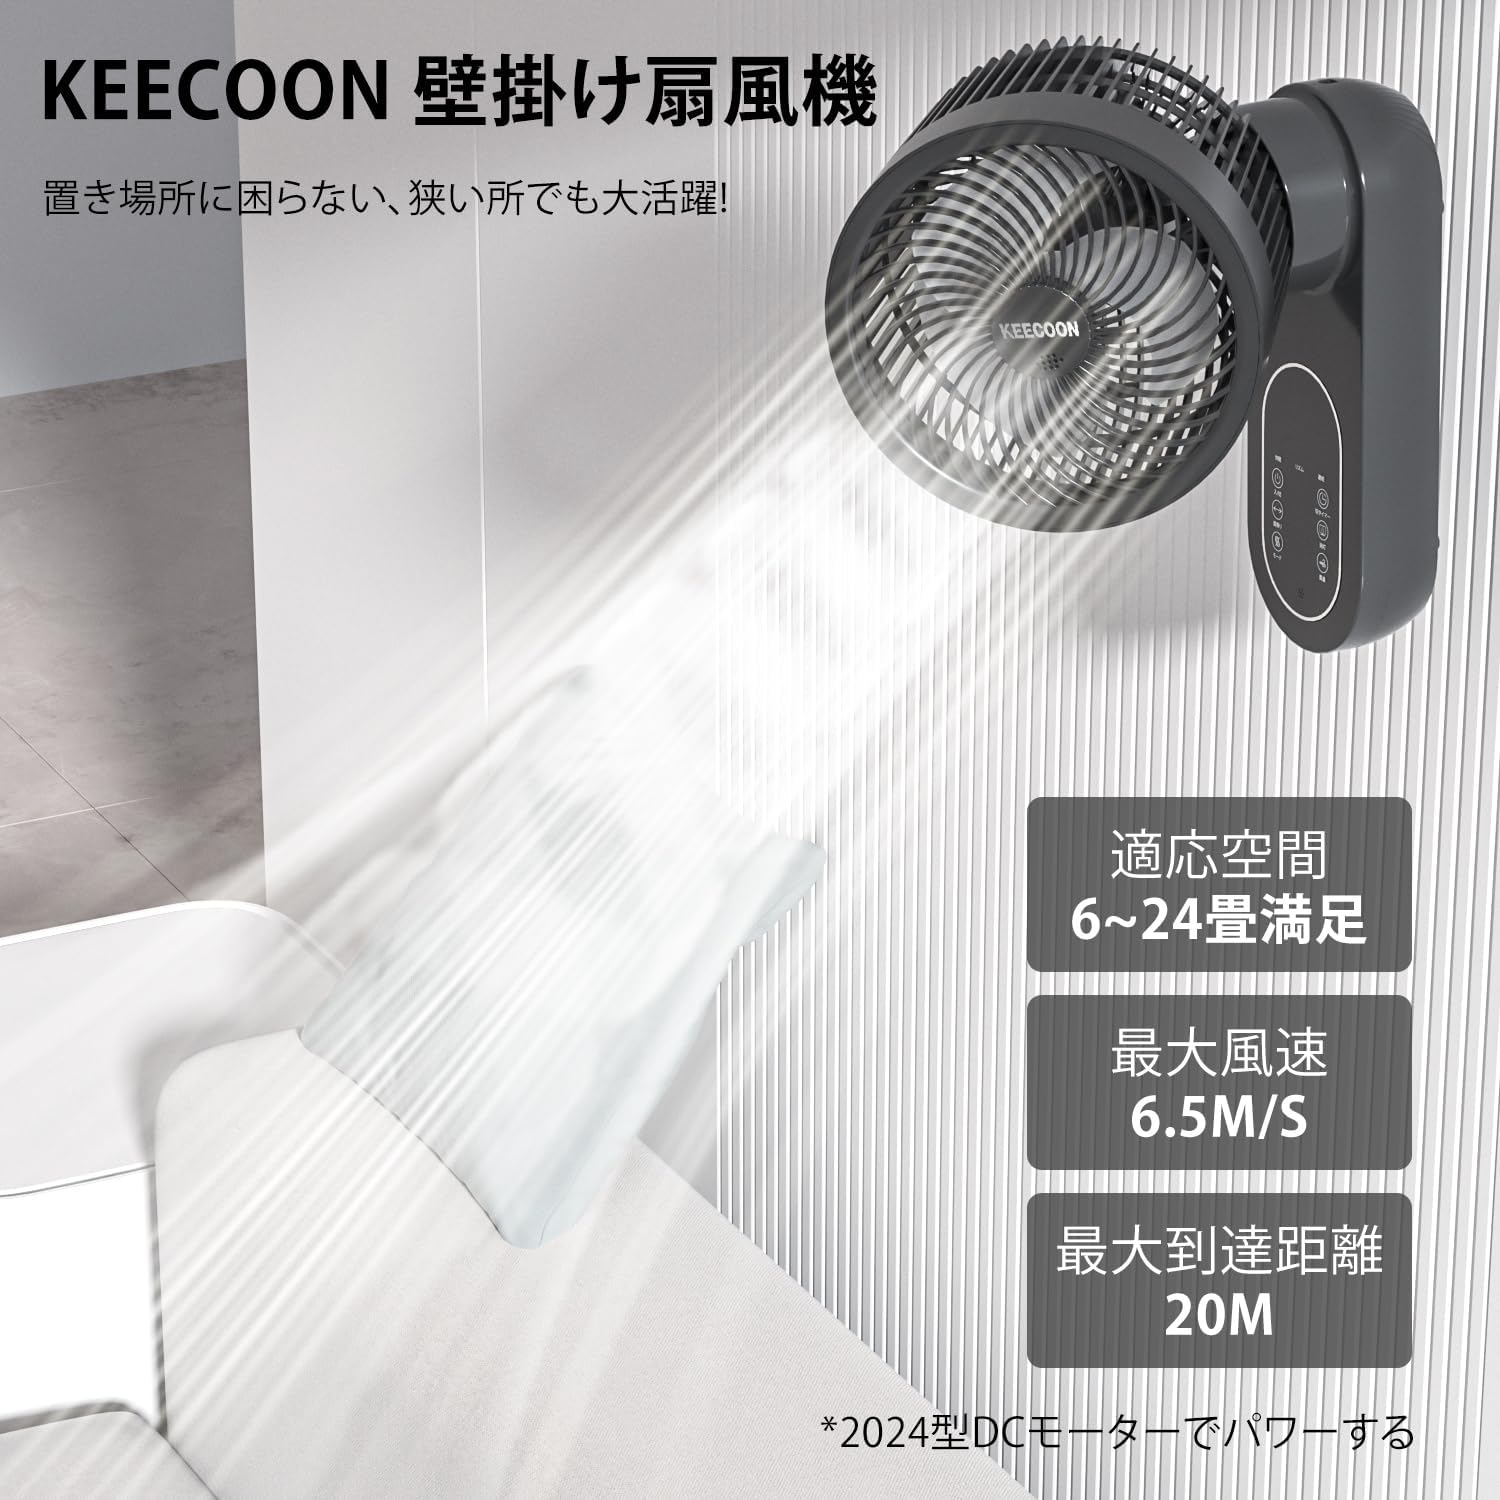 KEECOON 壁掛け サーキュレーター 扇風機 兼用 DCモーター アロマ対応 静音 首振り 風量3段階 リモコン タイマー付き パワフル